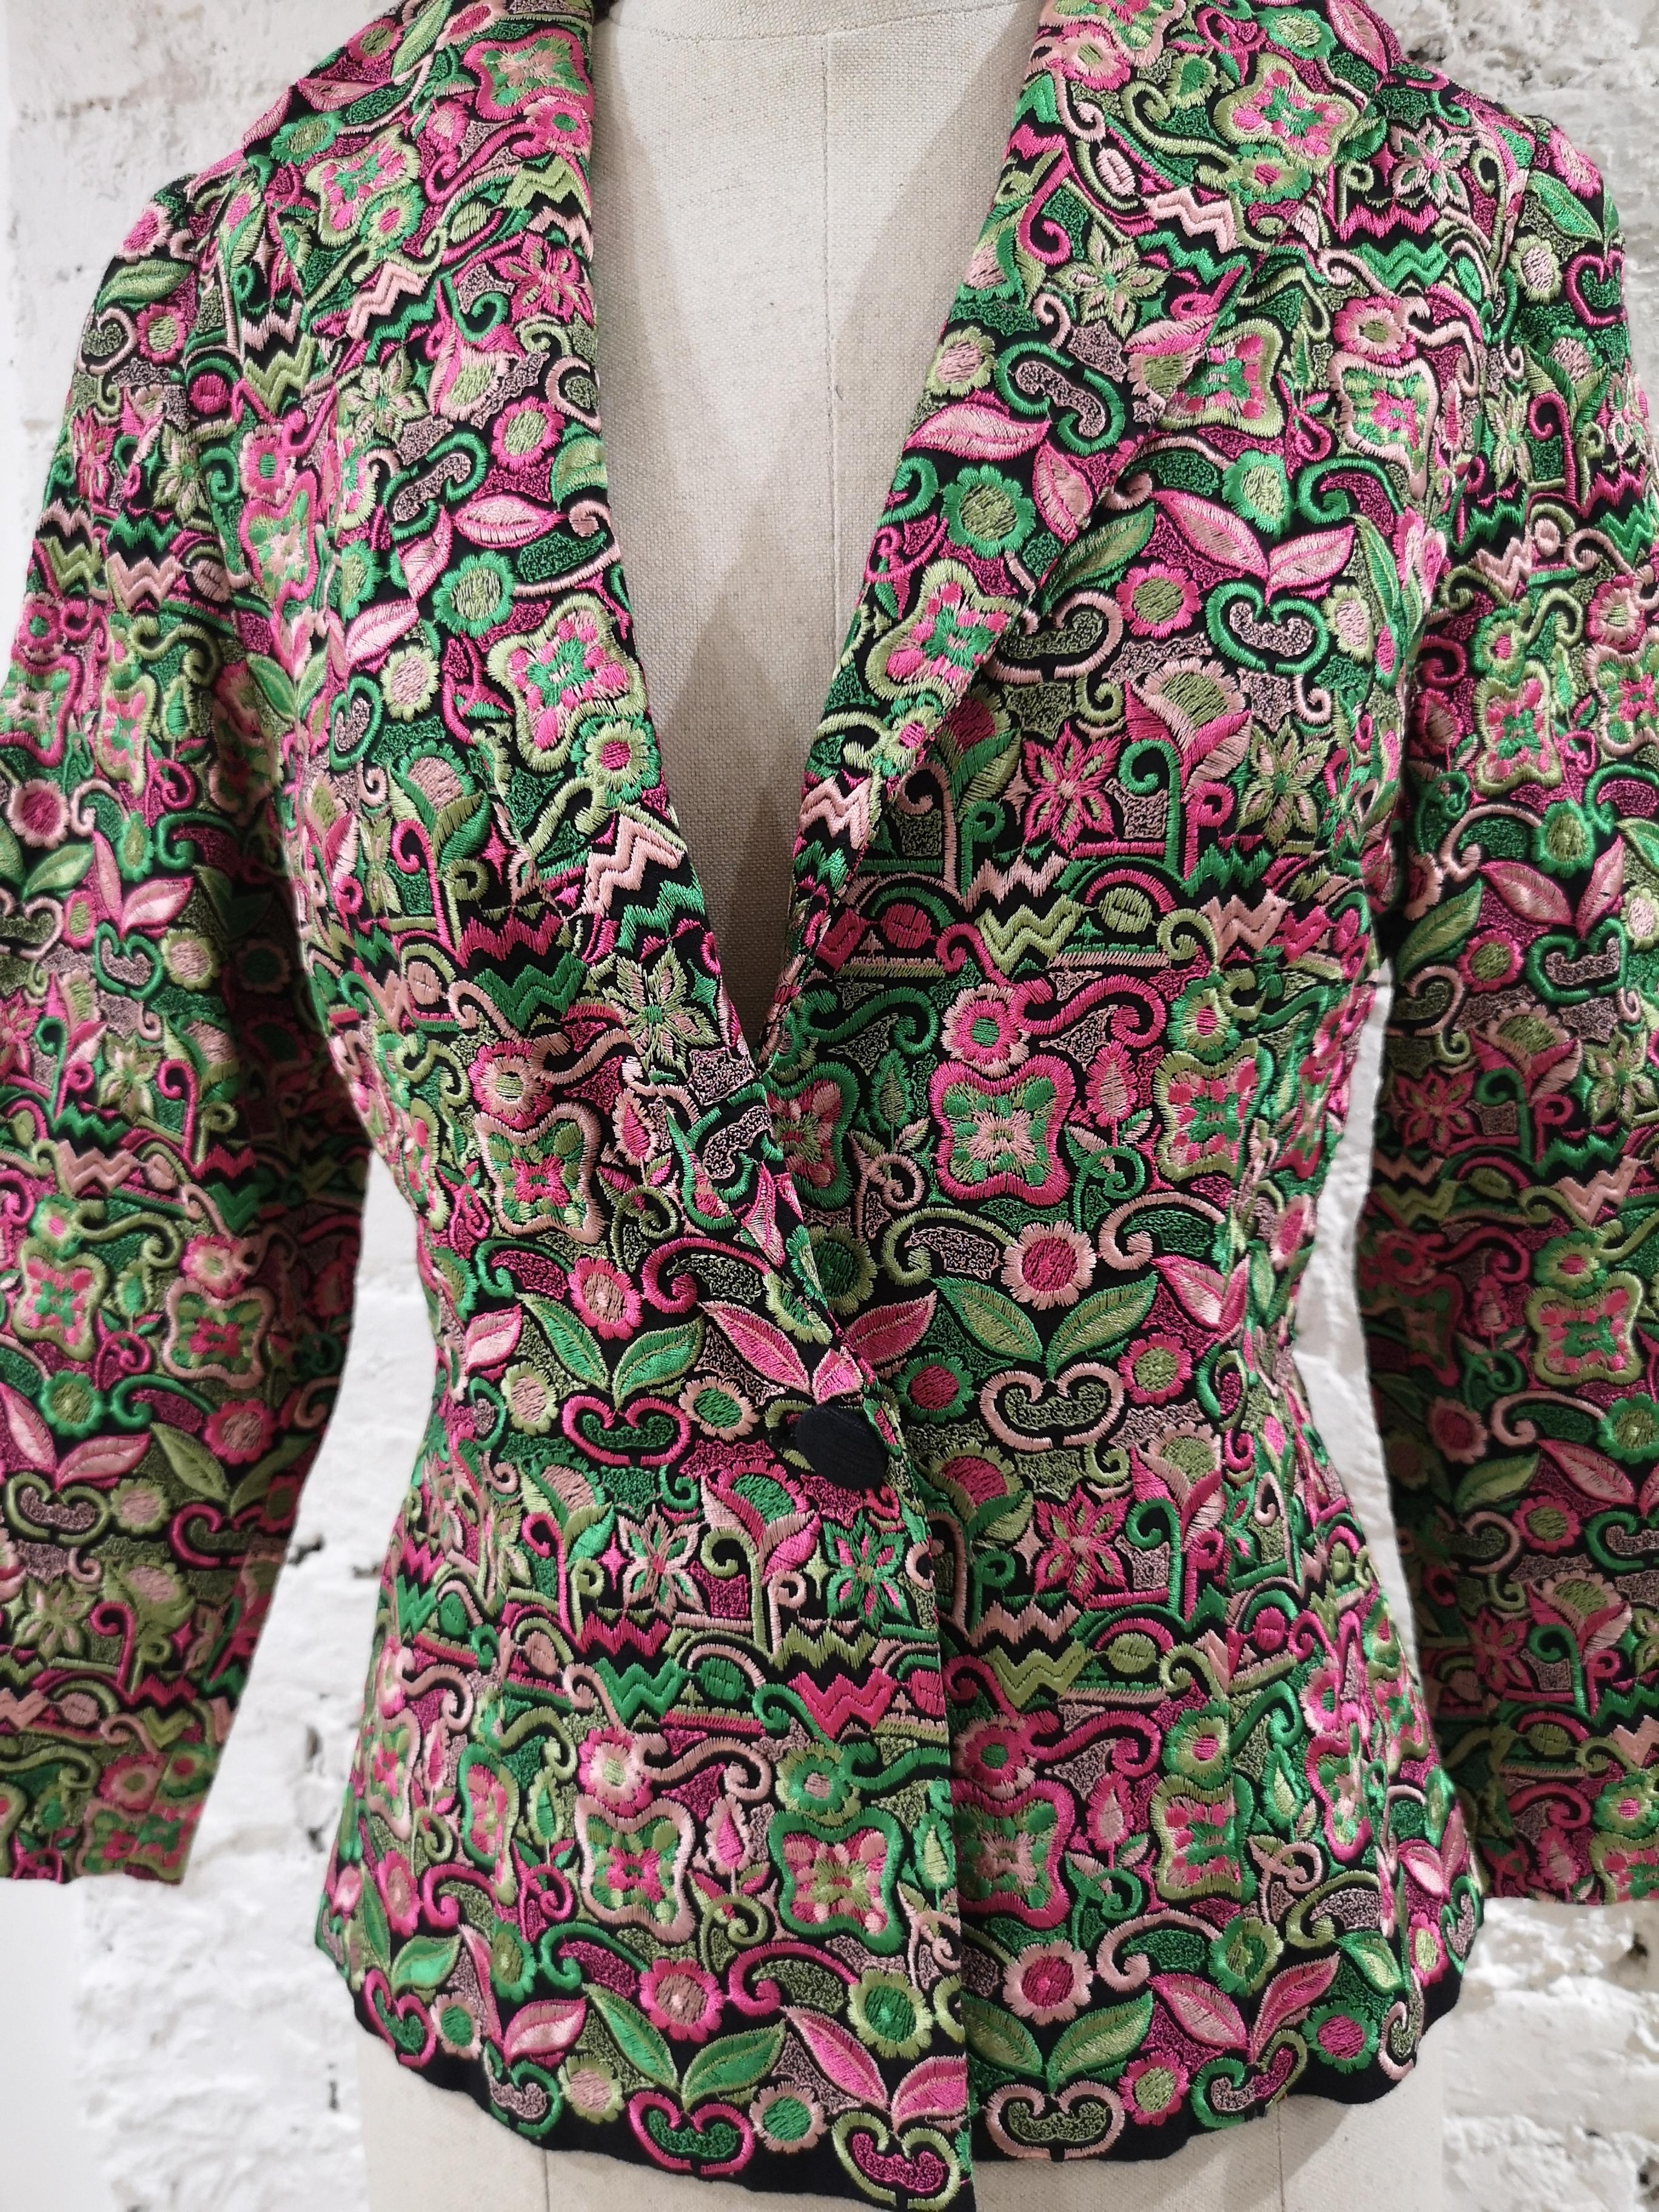 Vintage green pink fluo jacket
size M 